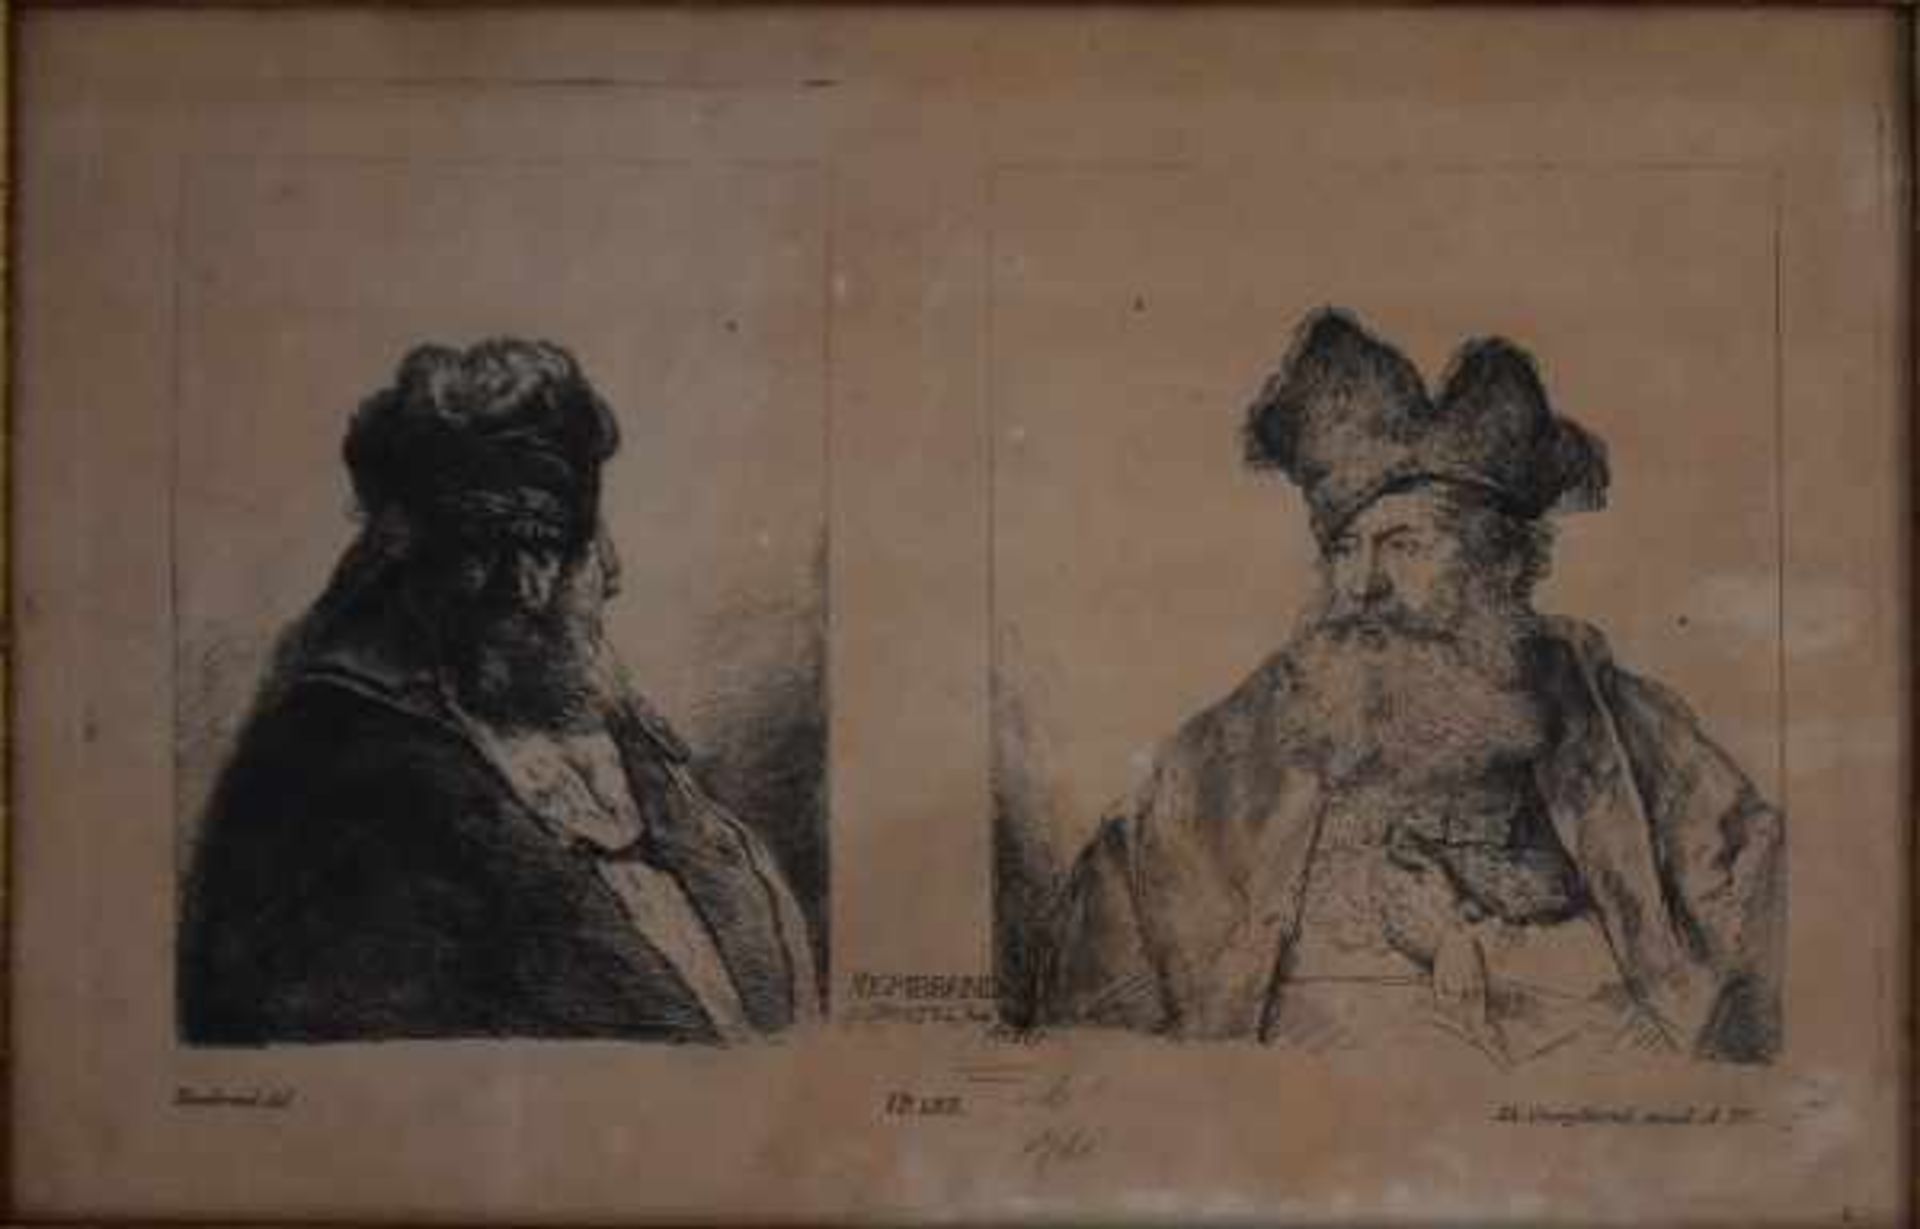 HERTEL Georg Johannes(18.Jh.) "Rembrand(t)", Kopie nach Rembrandt mit zwei Ansichten, No 183,